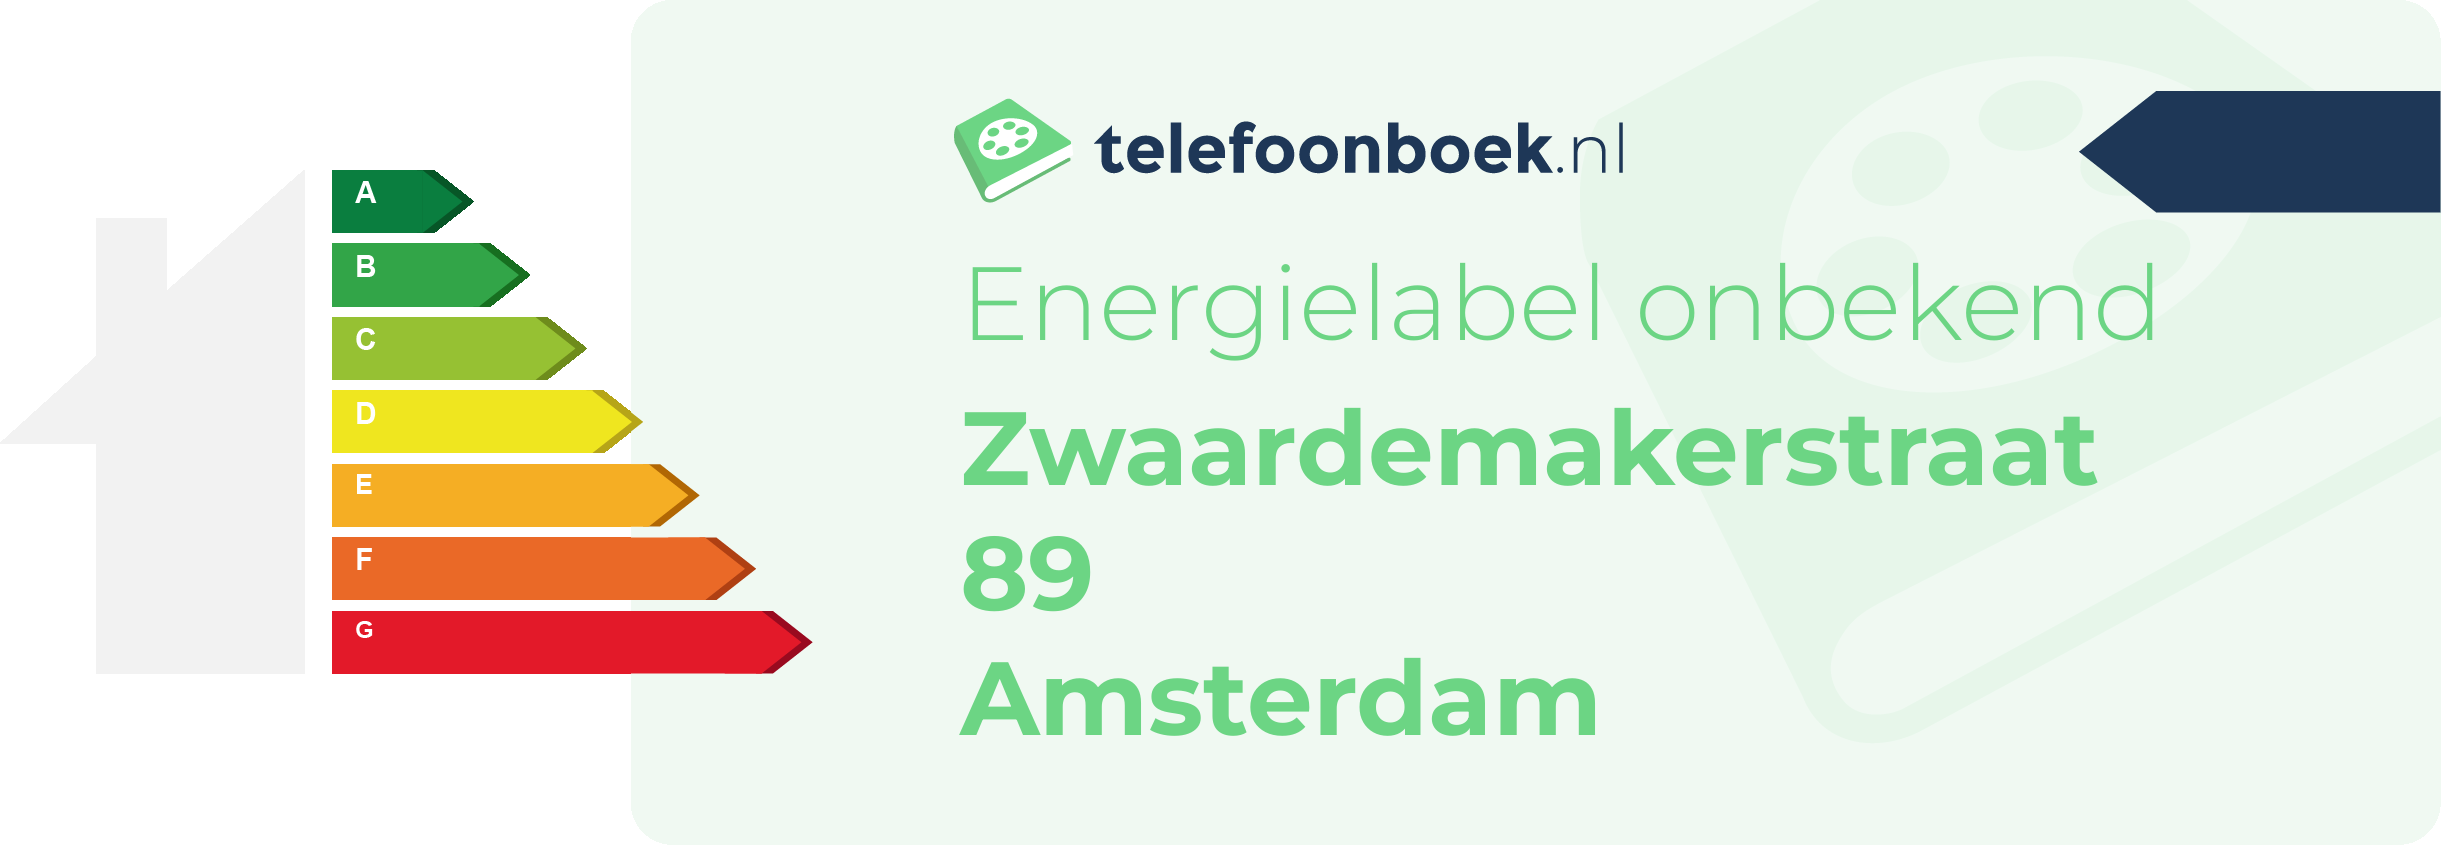 Energielabel Zwaardemakerstraat 89 Amsterdam